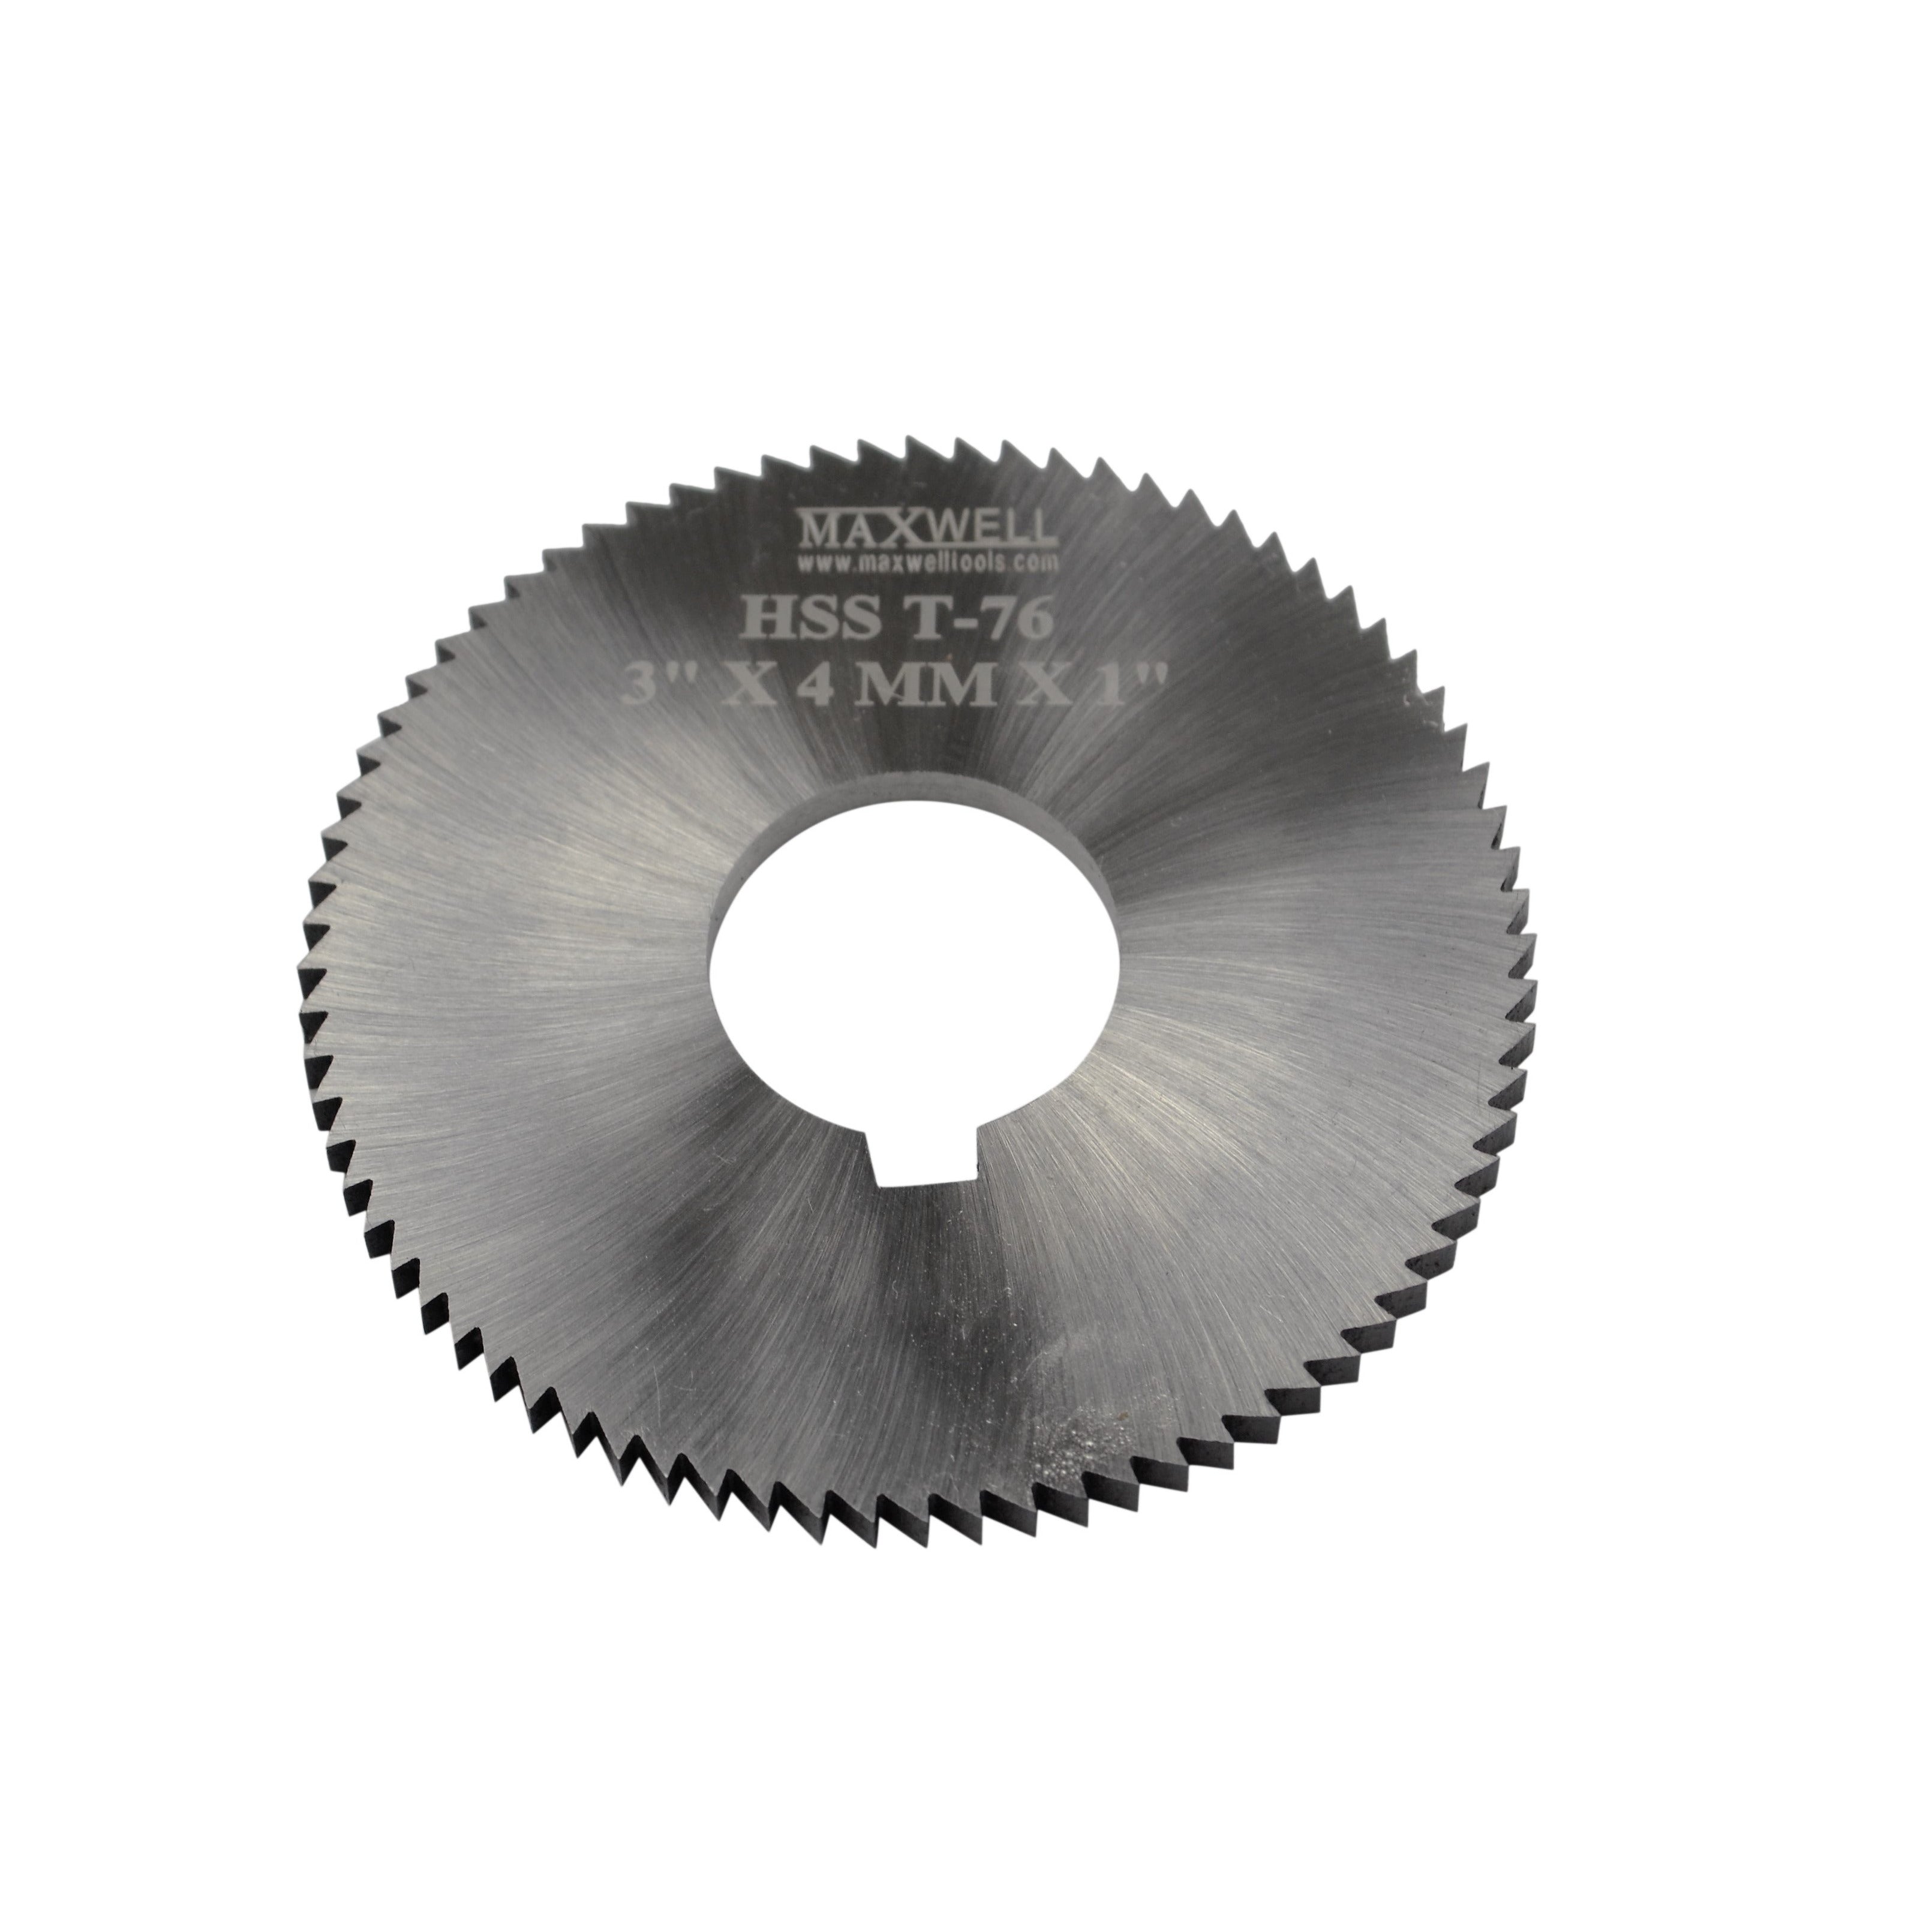 maxwell HSS milling slotting slitting saw cutter 3"x4mmx1" CNC metal work industria